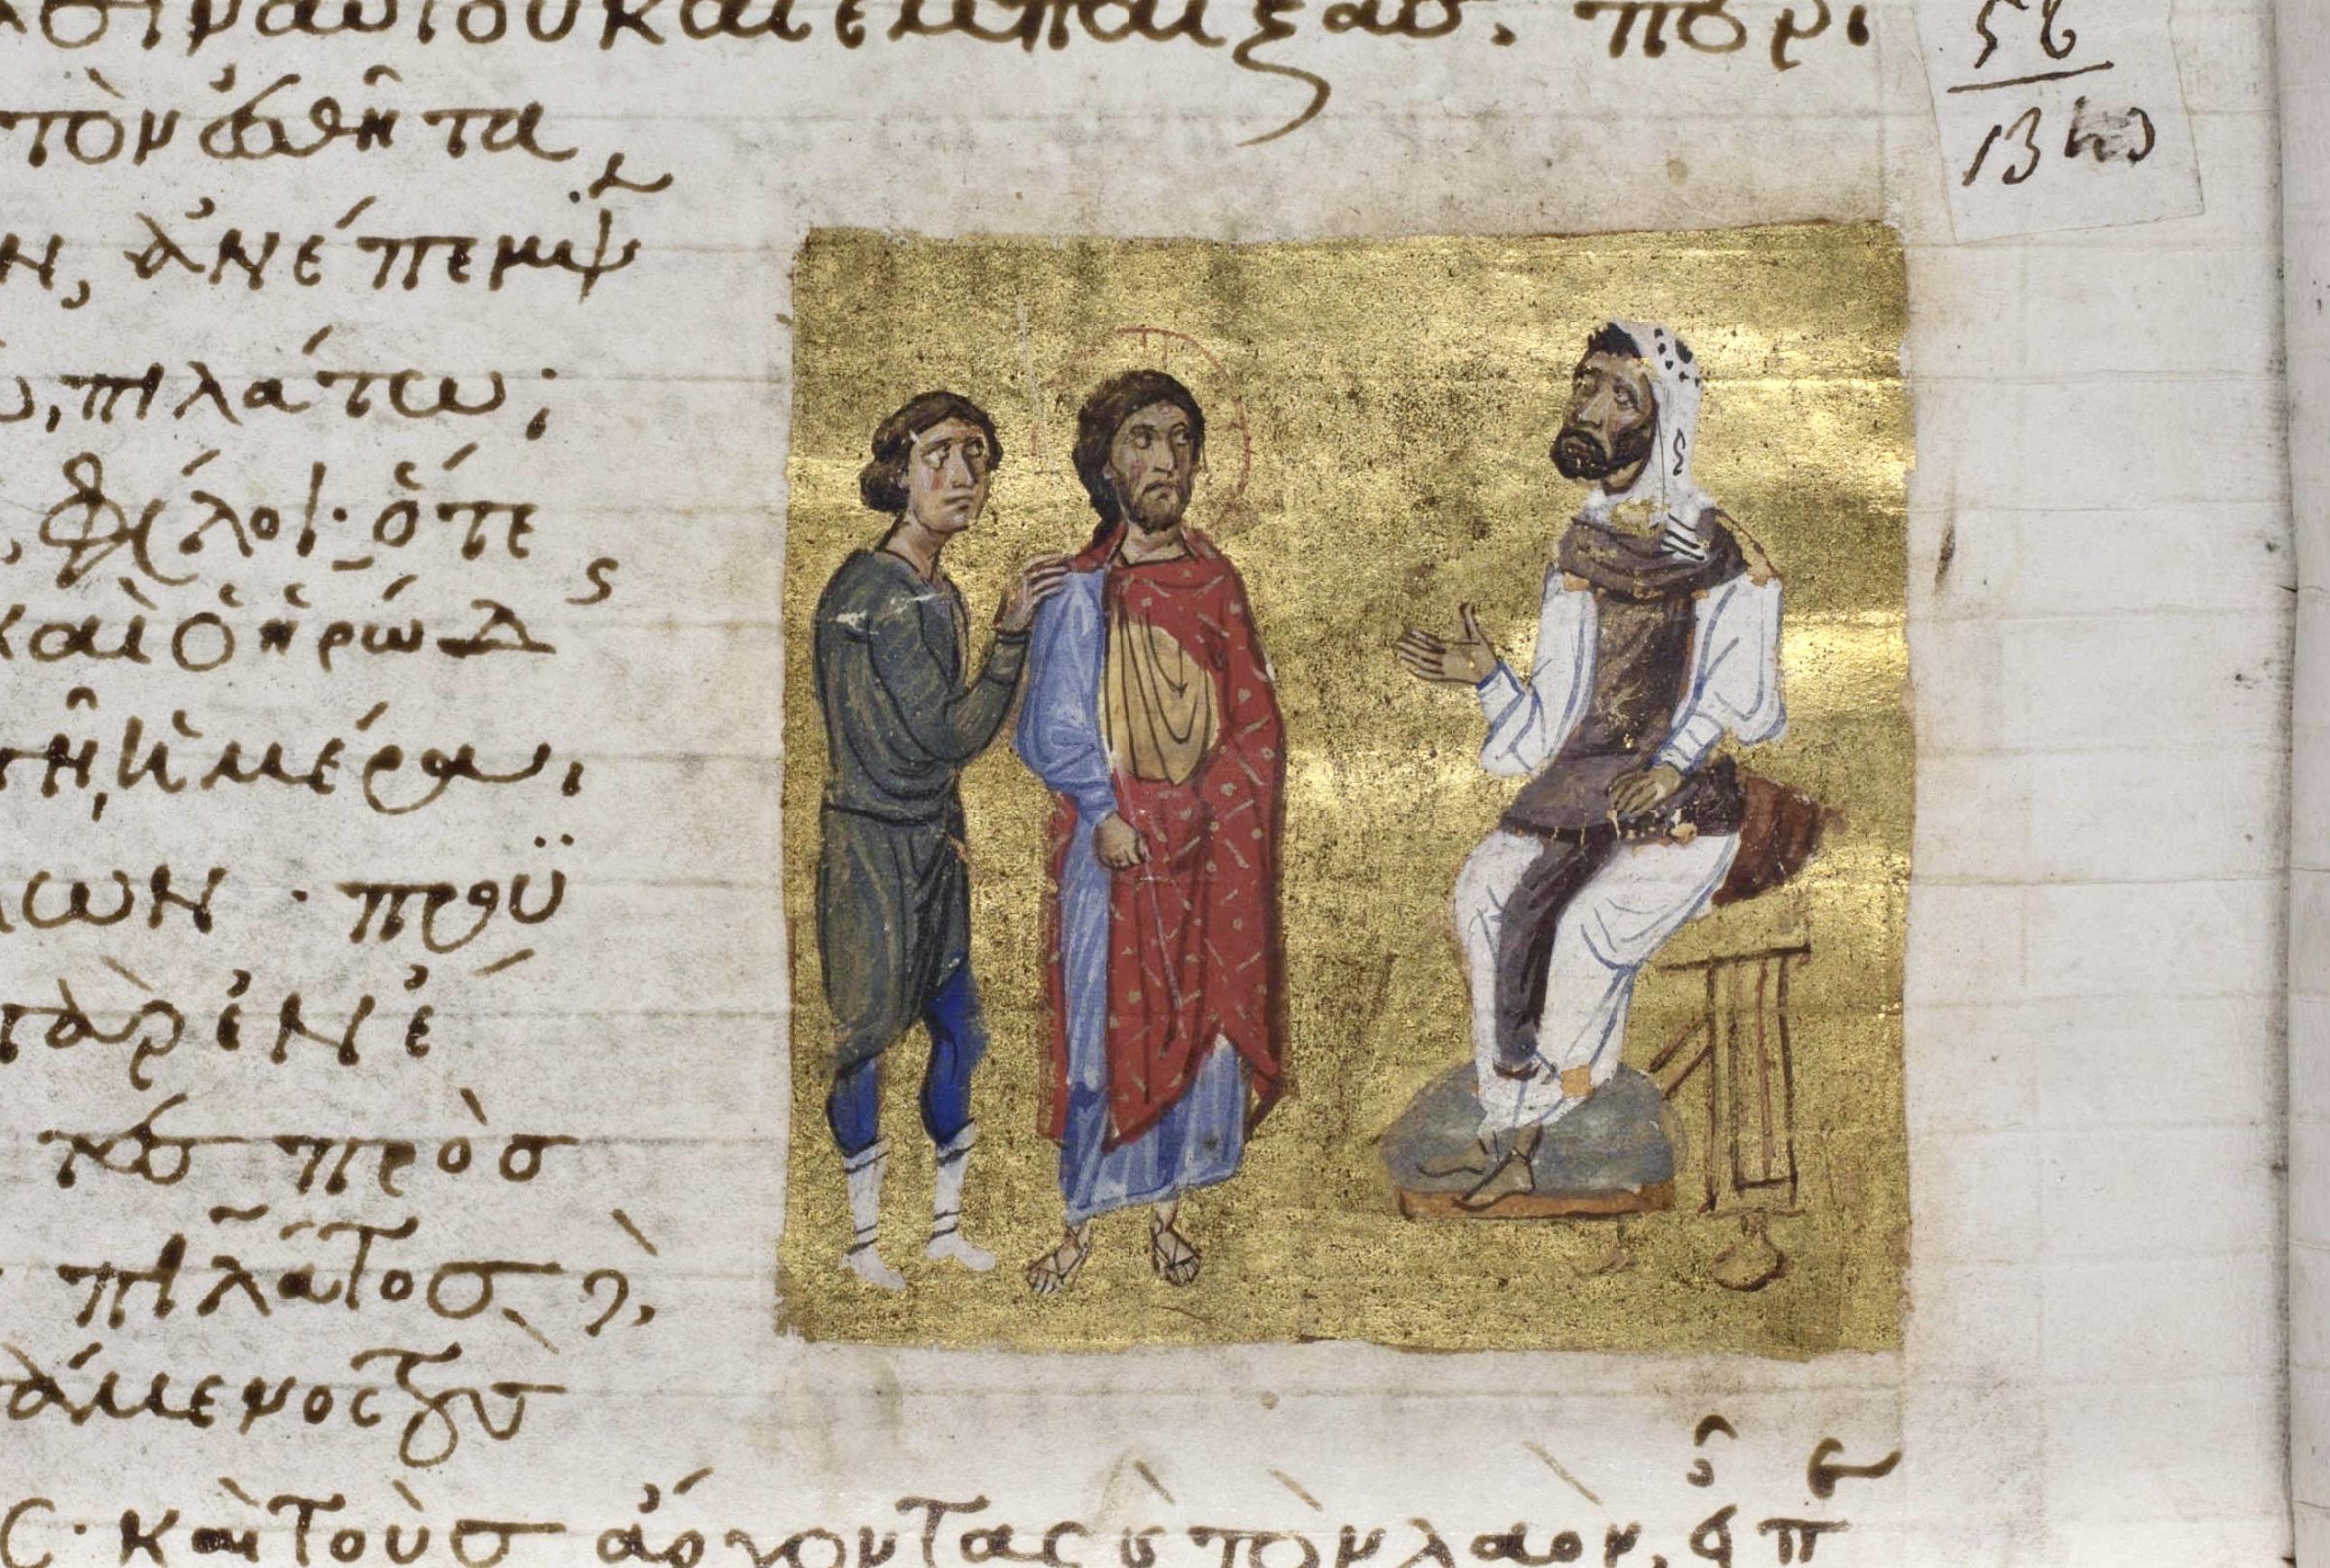 Ο Χριστός μπροστά στην Πόντιο Πιλάτο, Ευαγγέλιο ΕΒΕ 93, Εθνική Βιβλιοθήκη της Ελλάδος, Καλλιθέα.